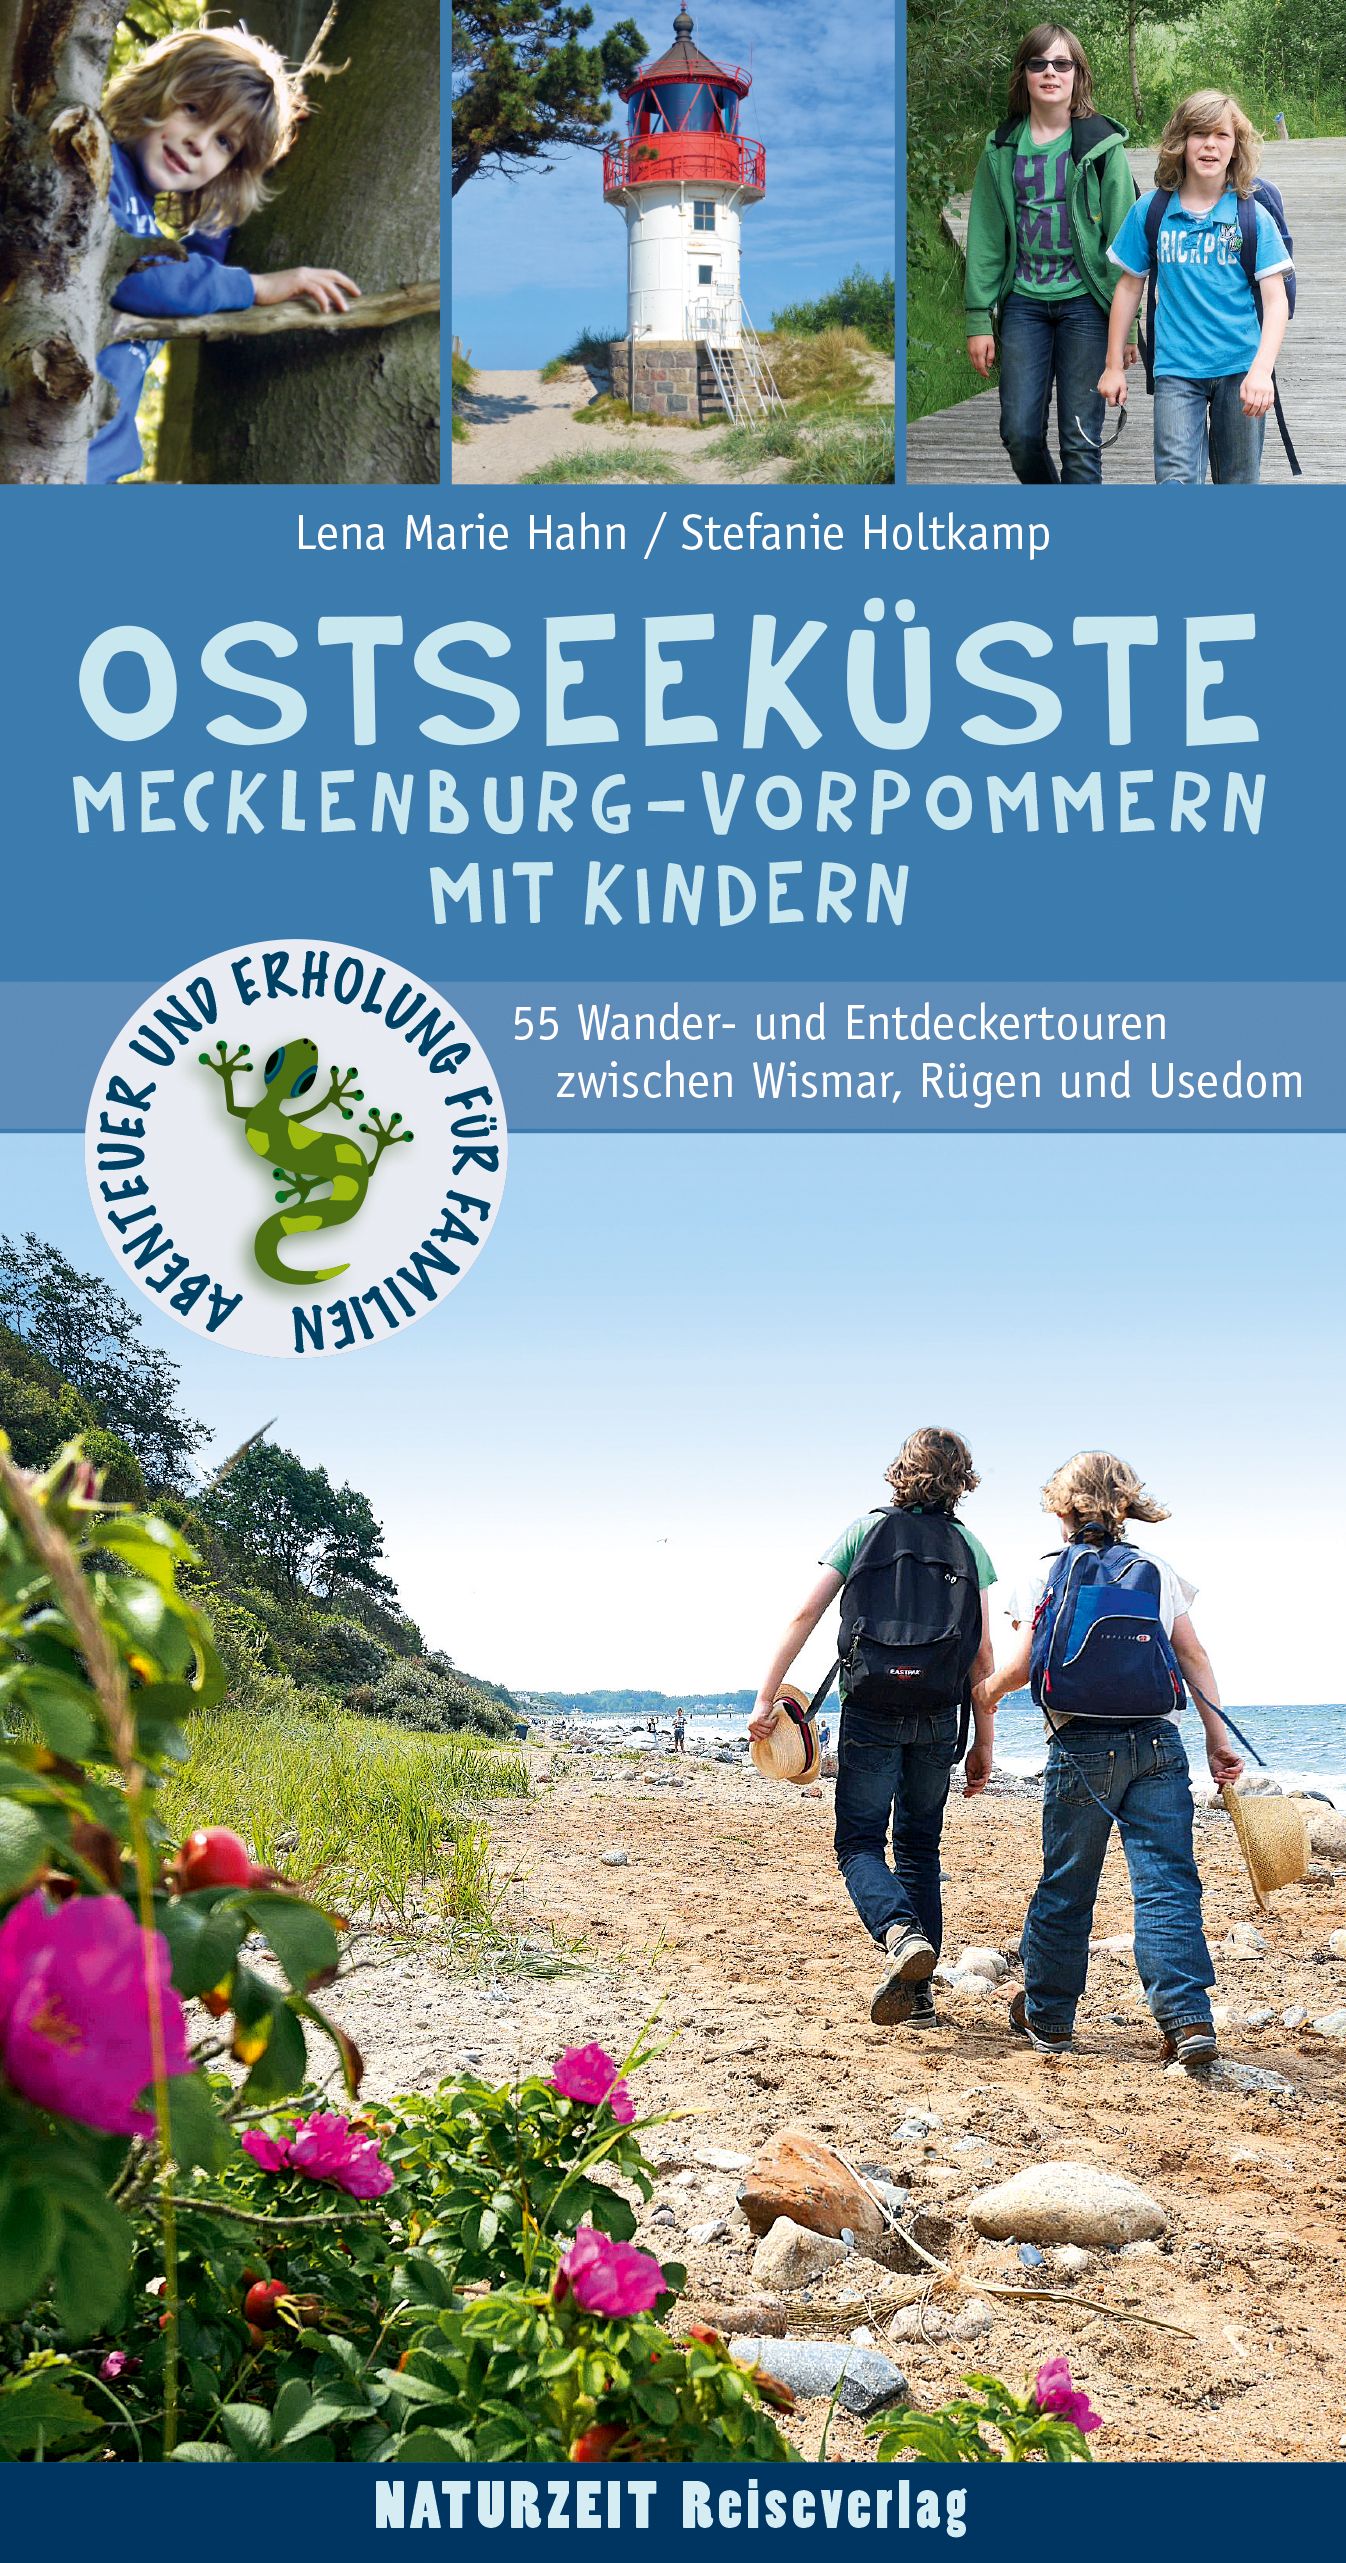 Ostsee mit Kindern, Reiseführer von Lena Marie Hahn und Stefanie Holtkamp